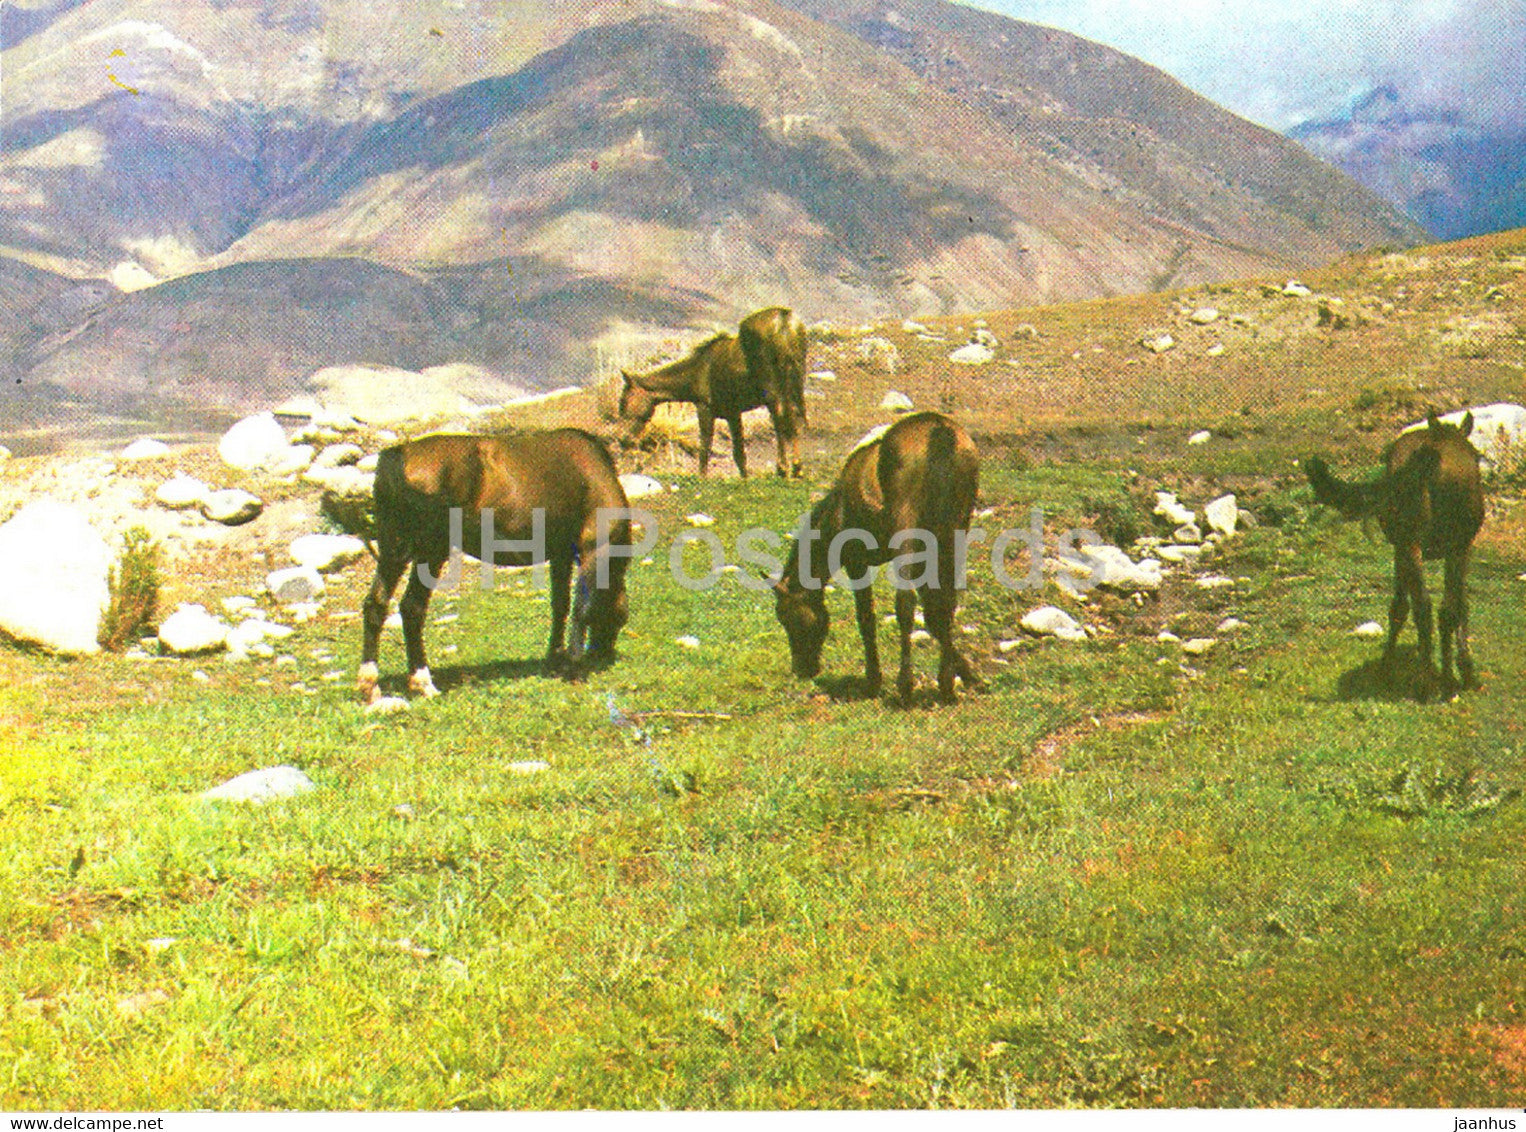 expanse - horse - Nature Trails - 1981 - Uzbekistan USSR - unused - JH Postcards